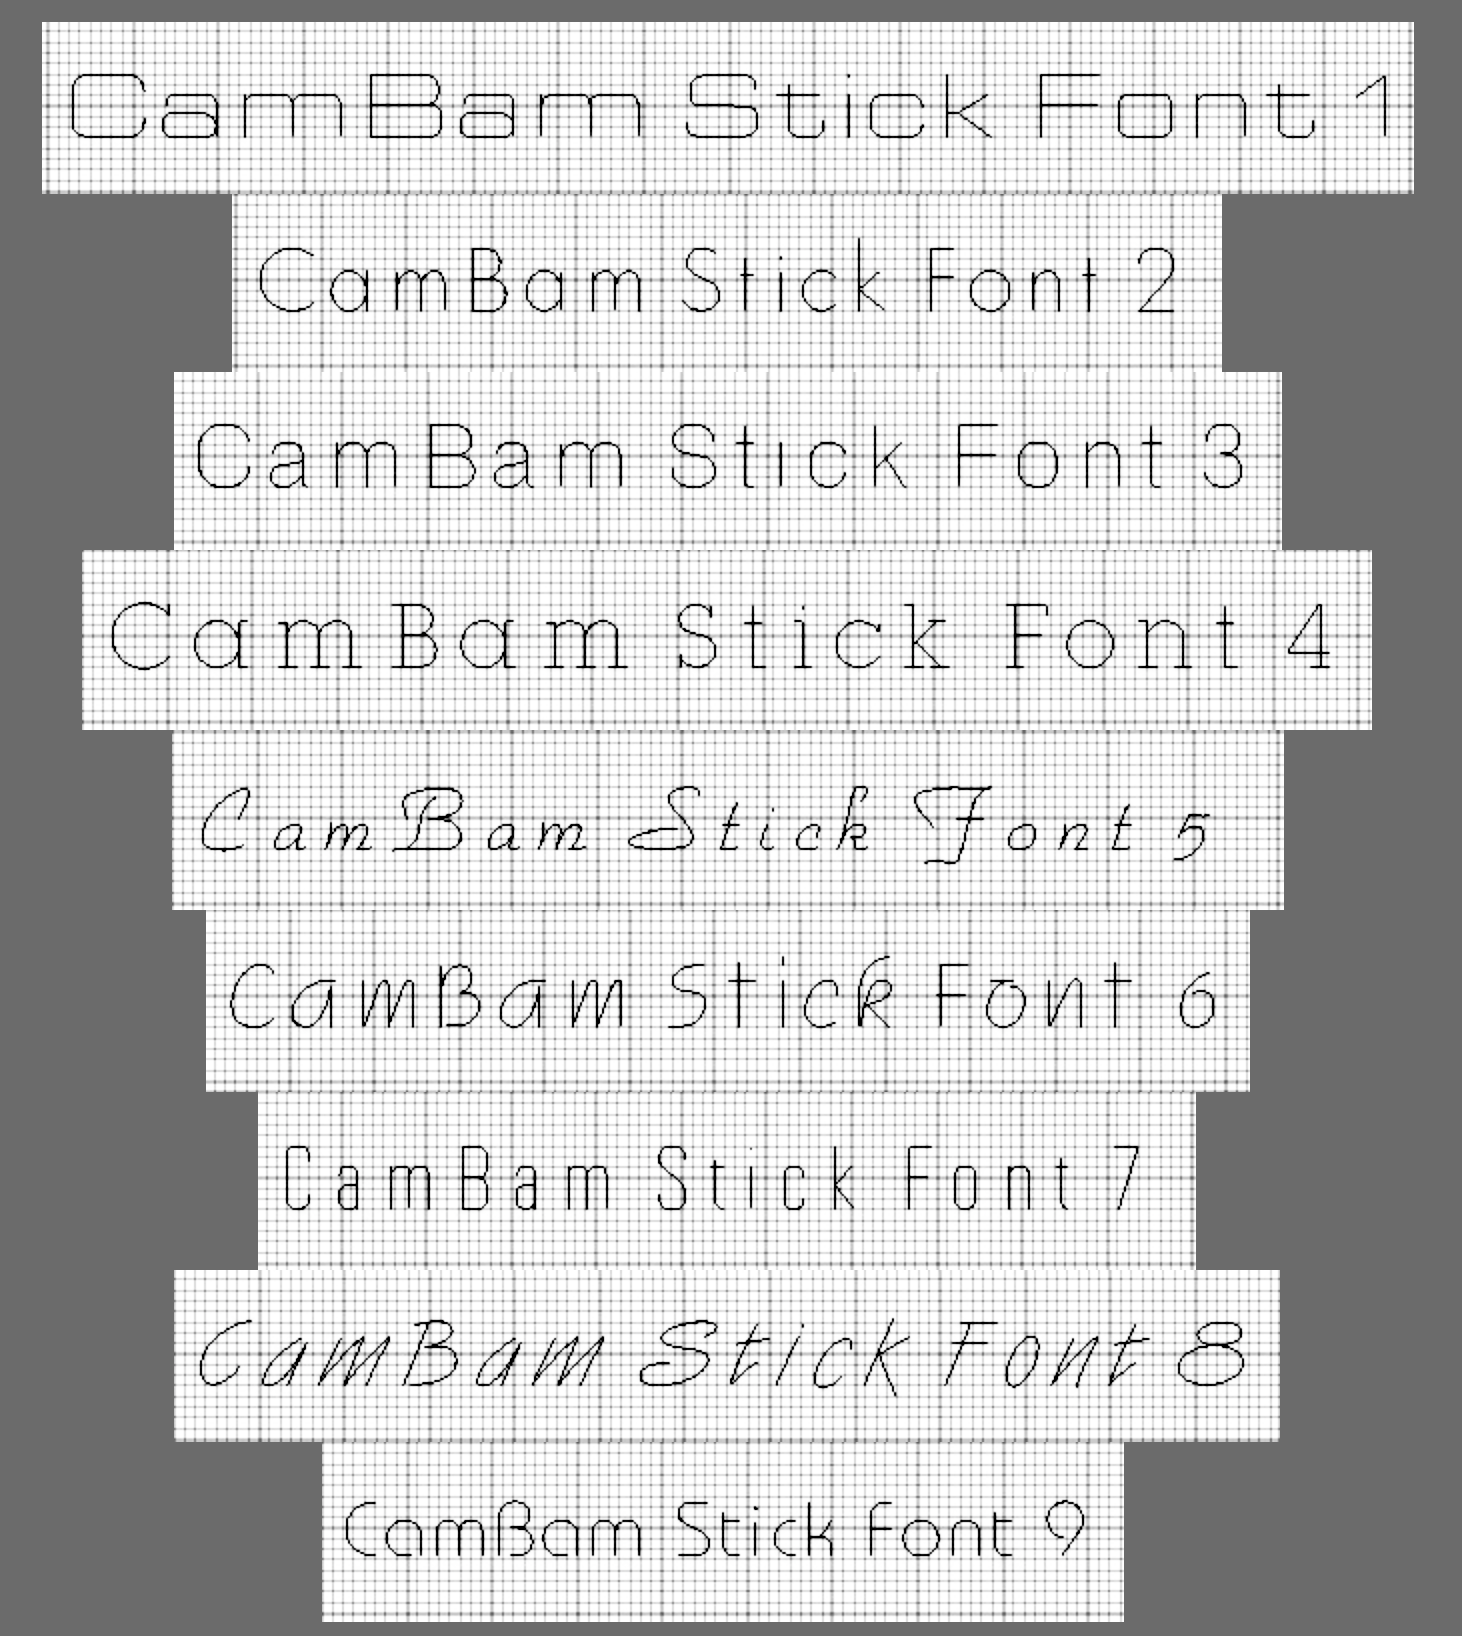 Cambam Plus 0.9.8 serial code 52